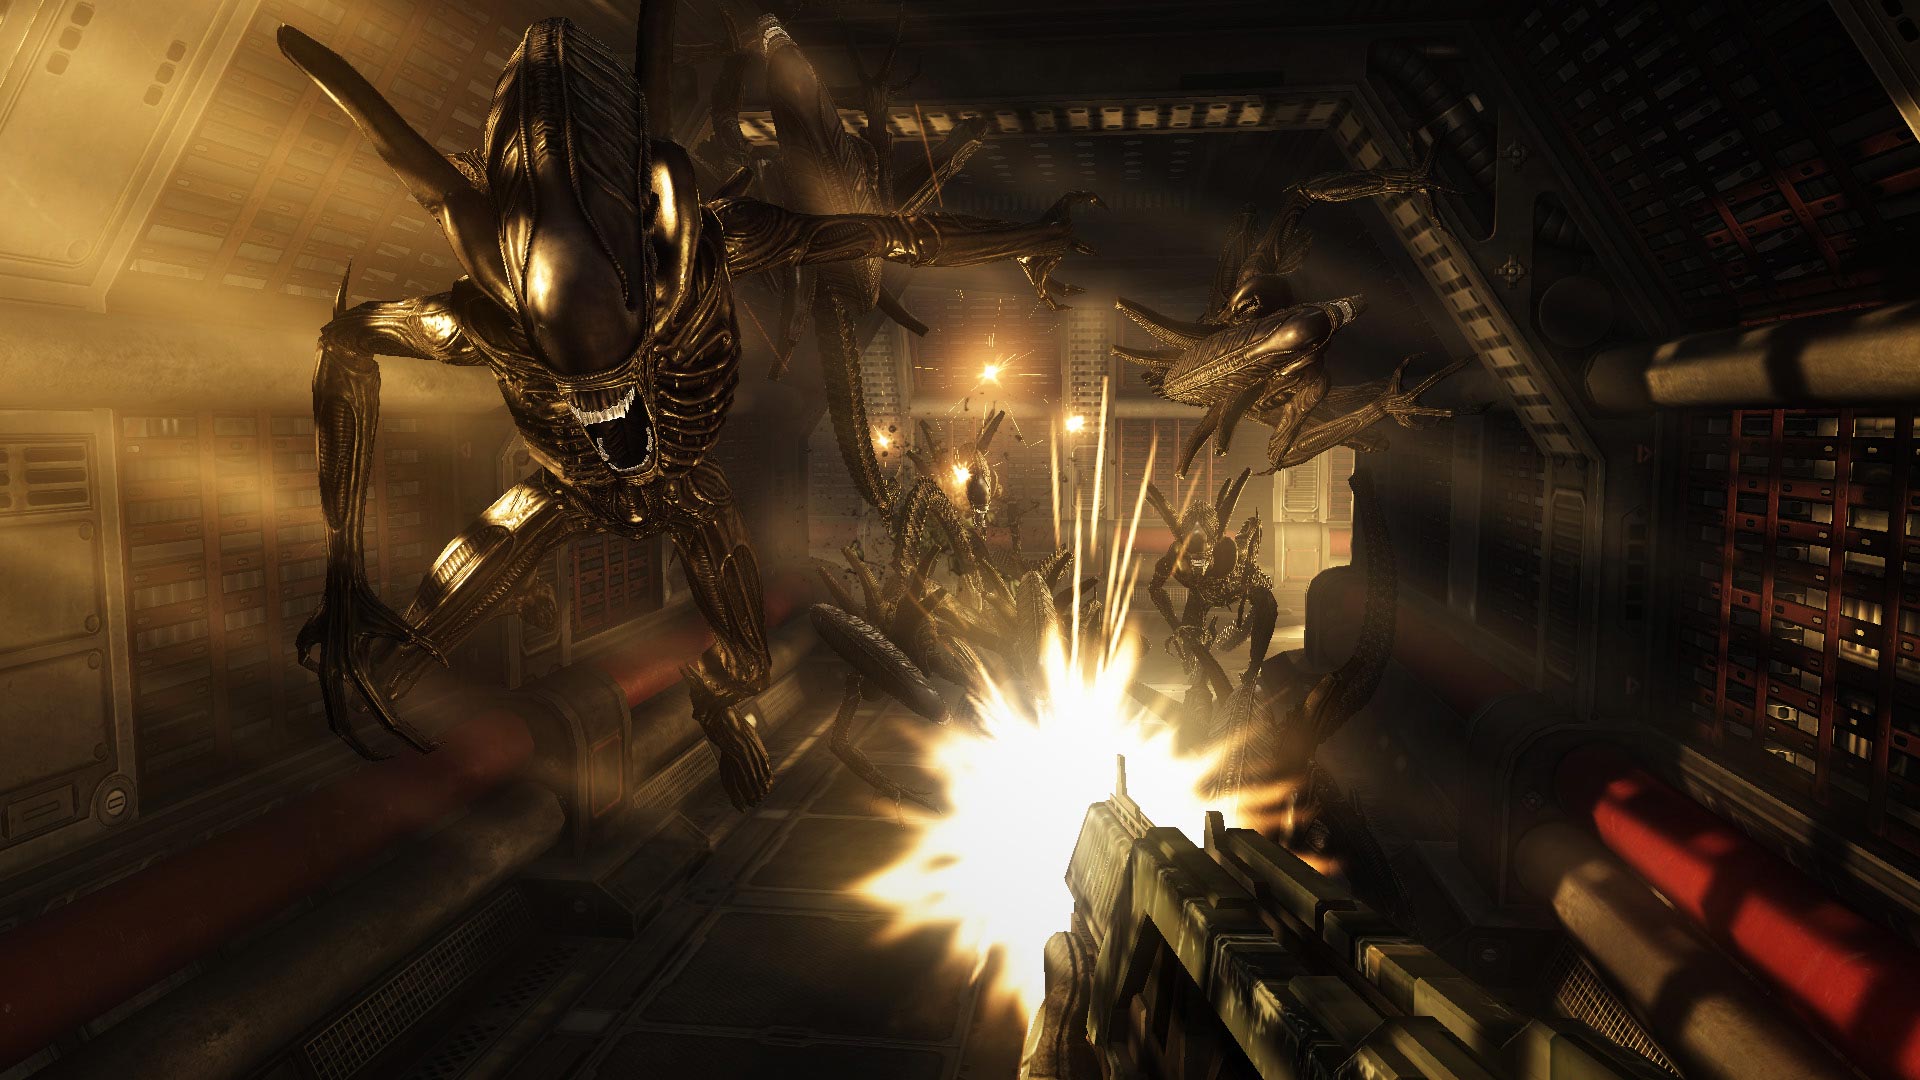 Immagine pubblicata in relazione al seguente contenuto: SEGA pubblica nuovi screenshot di Aliens vs. Predator | Nome immagine: news10579_2.jpg